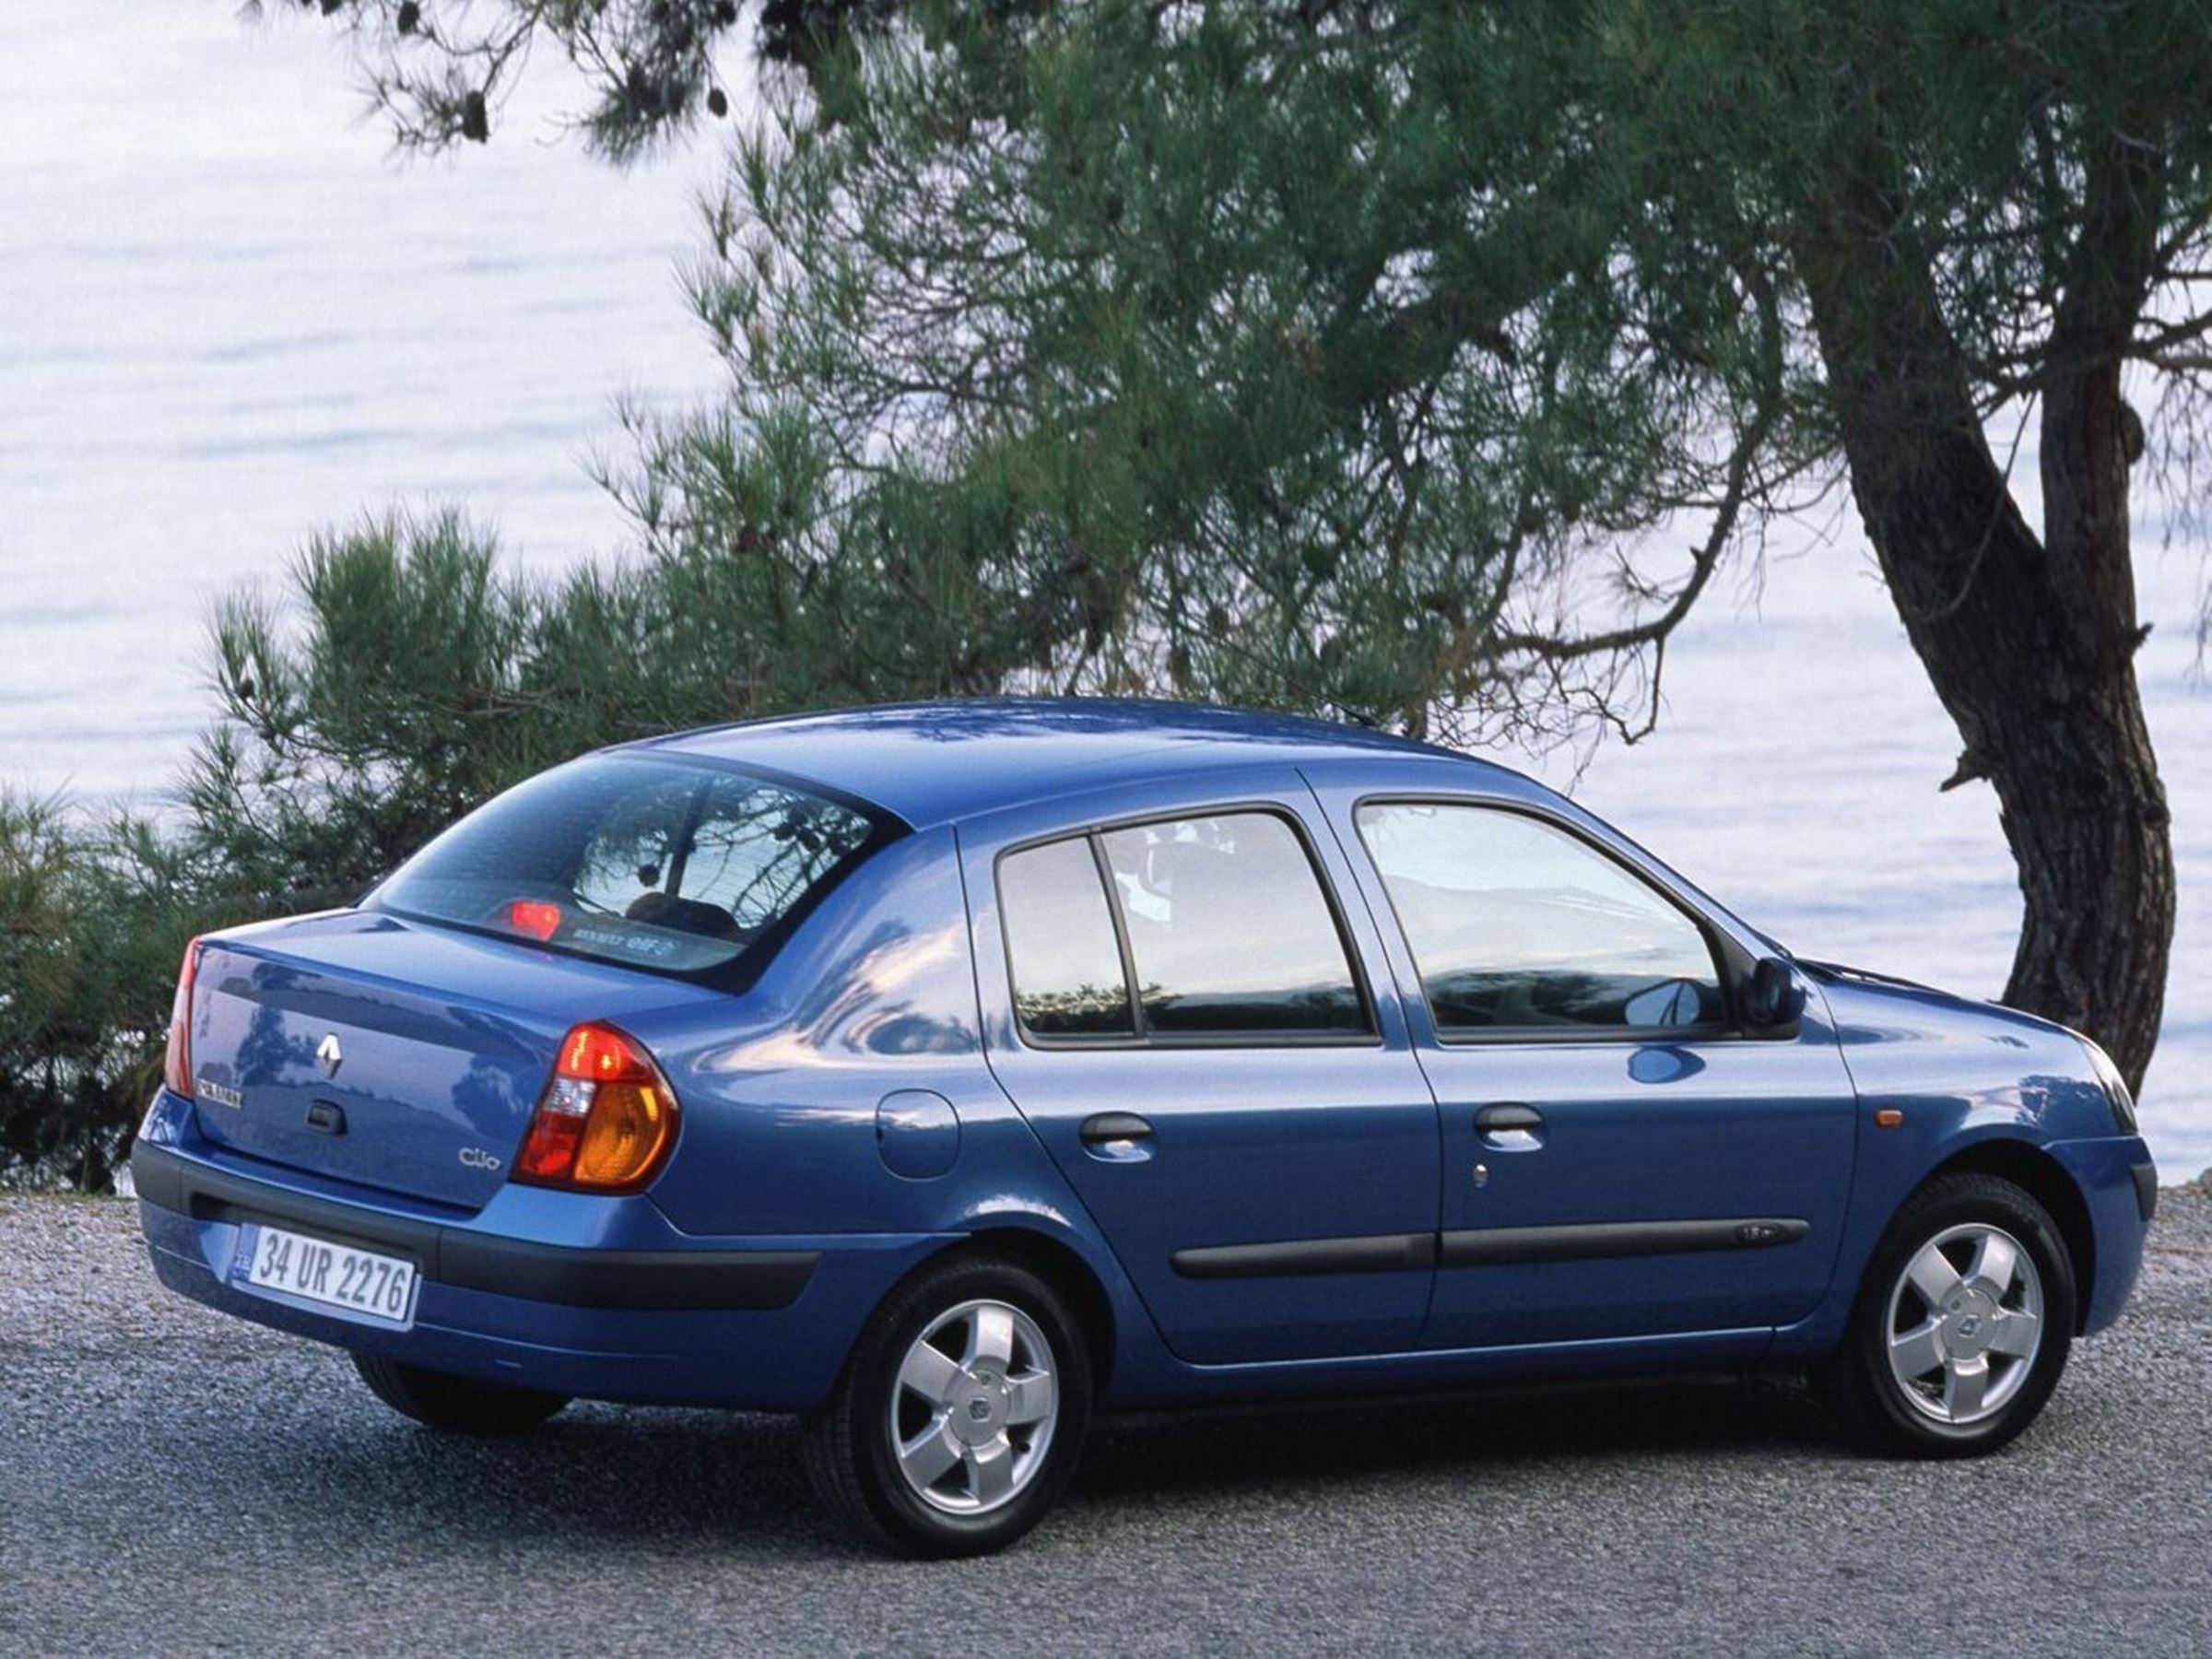 Рено 1.4 16v. Рено Клио Симбол. Рено Симбол 4 поколения. Renault symbol 2 поколения. Renault symbol 2002-2008.